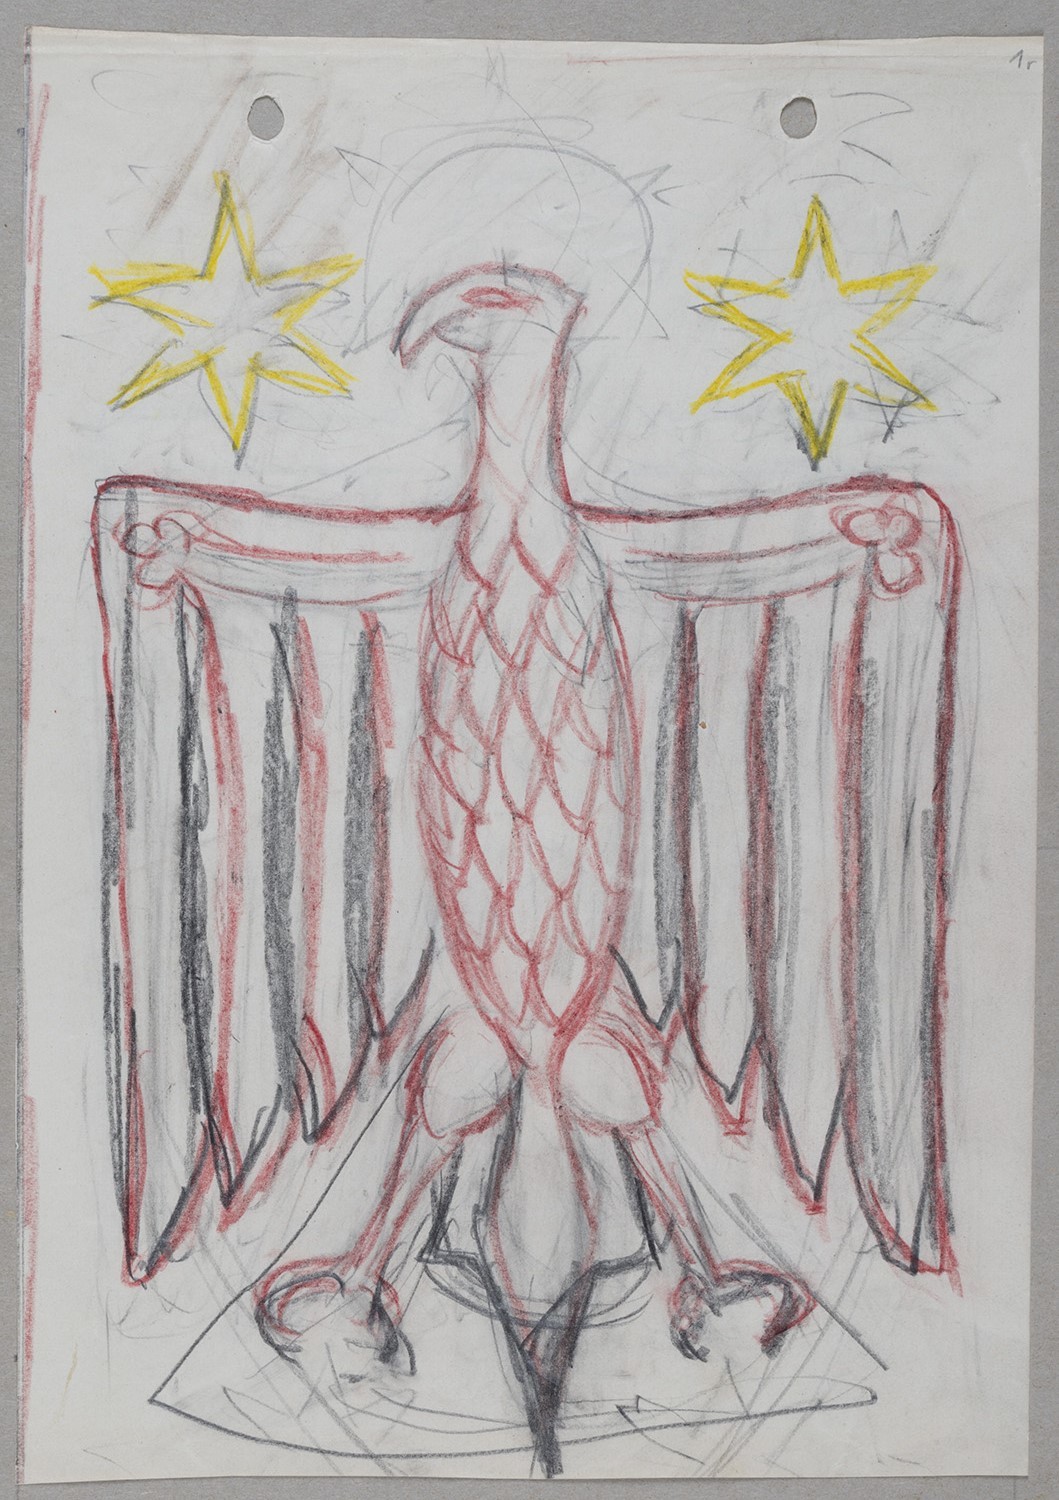 Neues Adler Wappen der Stadt Drossen (Kr. Weststernberg) (Landesgeschichtliche Vereinigung für die Mark Brandenburg e.V., Archiv CC BY)